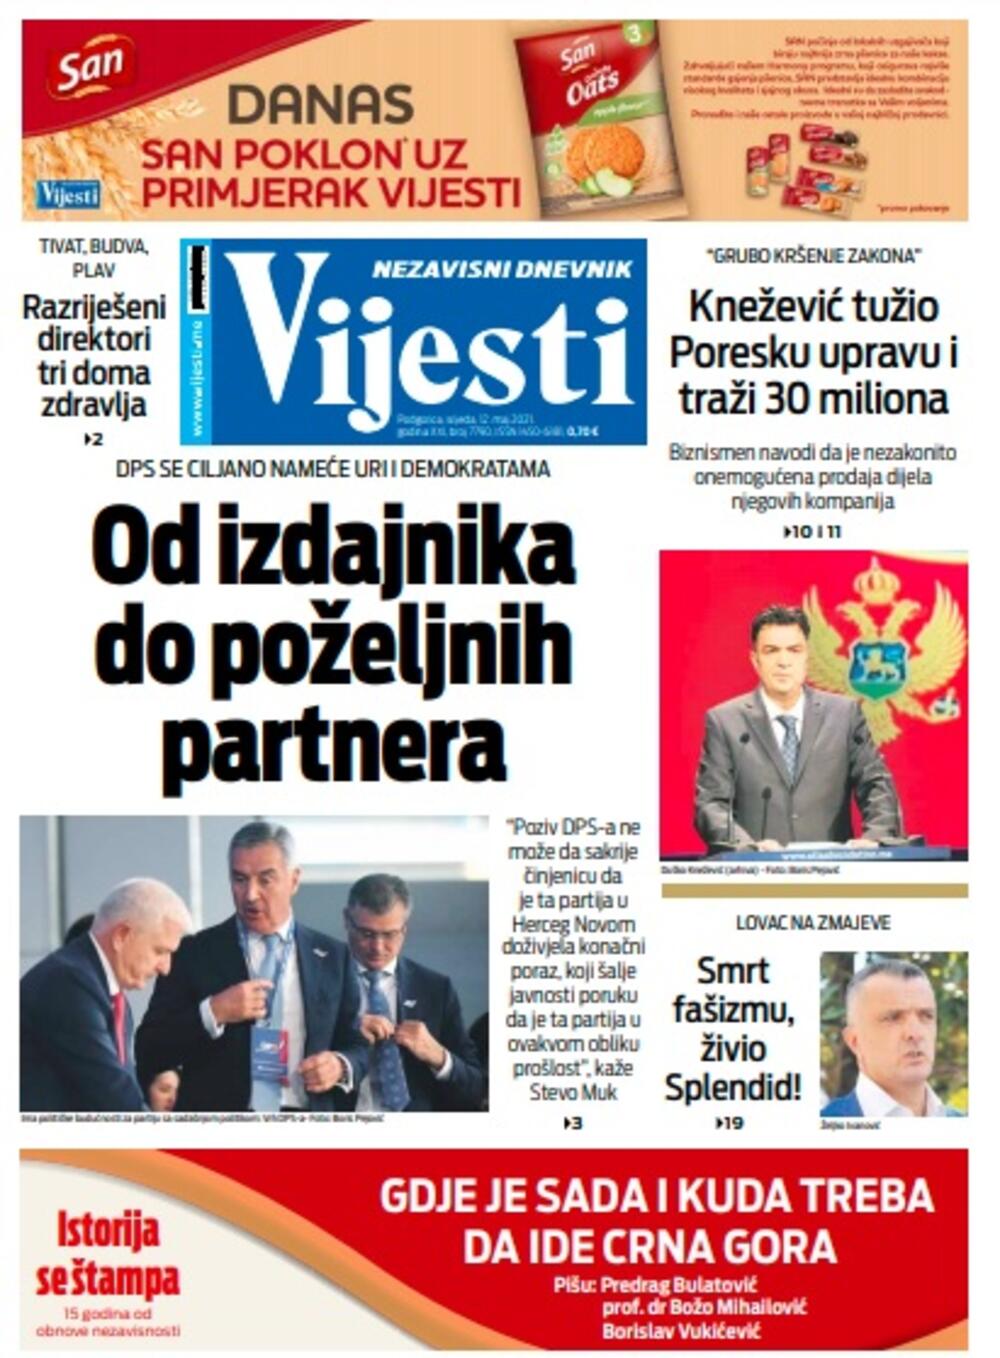 Naslovna strana "Vijesti" za srijedu 12. maj 2021. godine, Foto: Vijesti